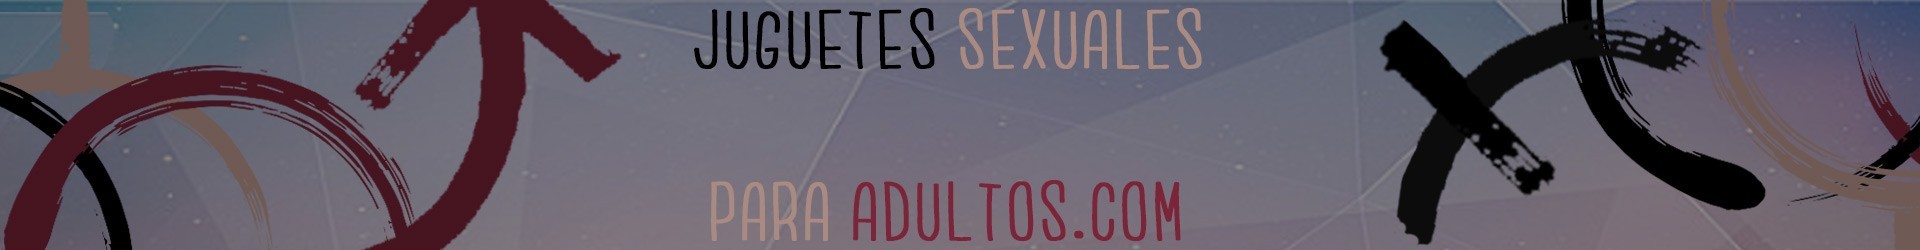 Biberones - Sex Shop Juguetes Sexuales